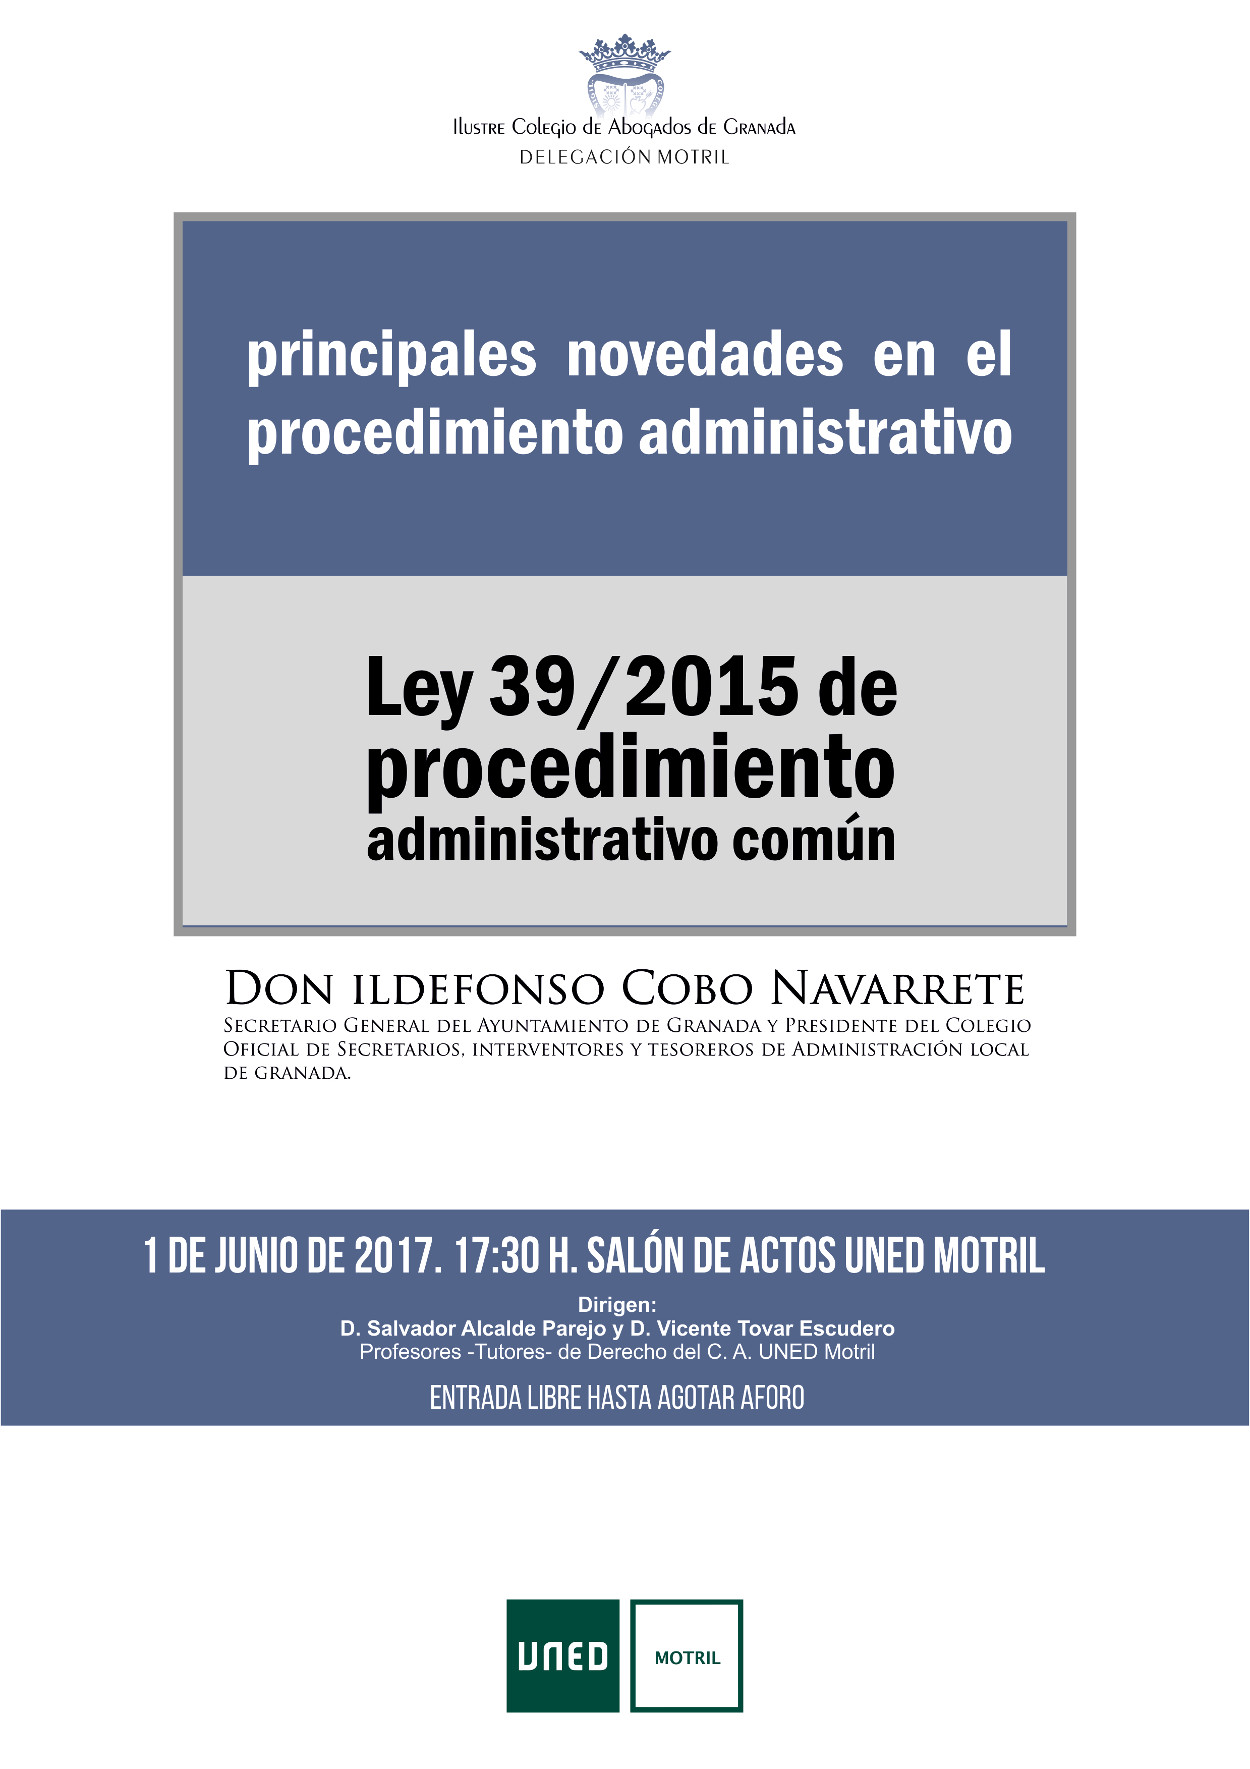 Conferencia: Principales novedades en el procedimiento administrativo